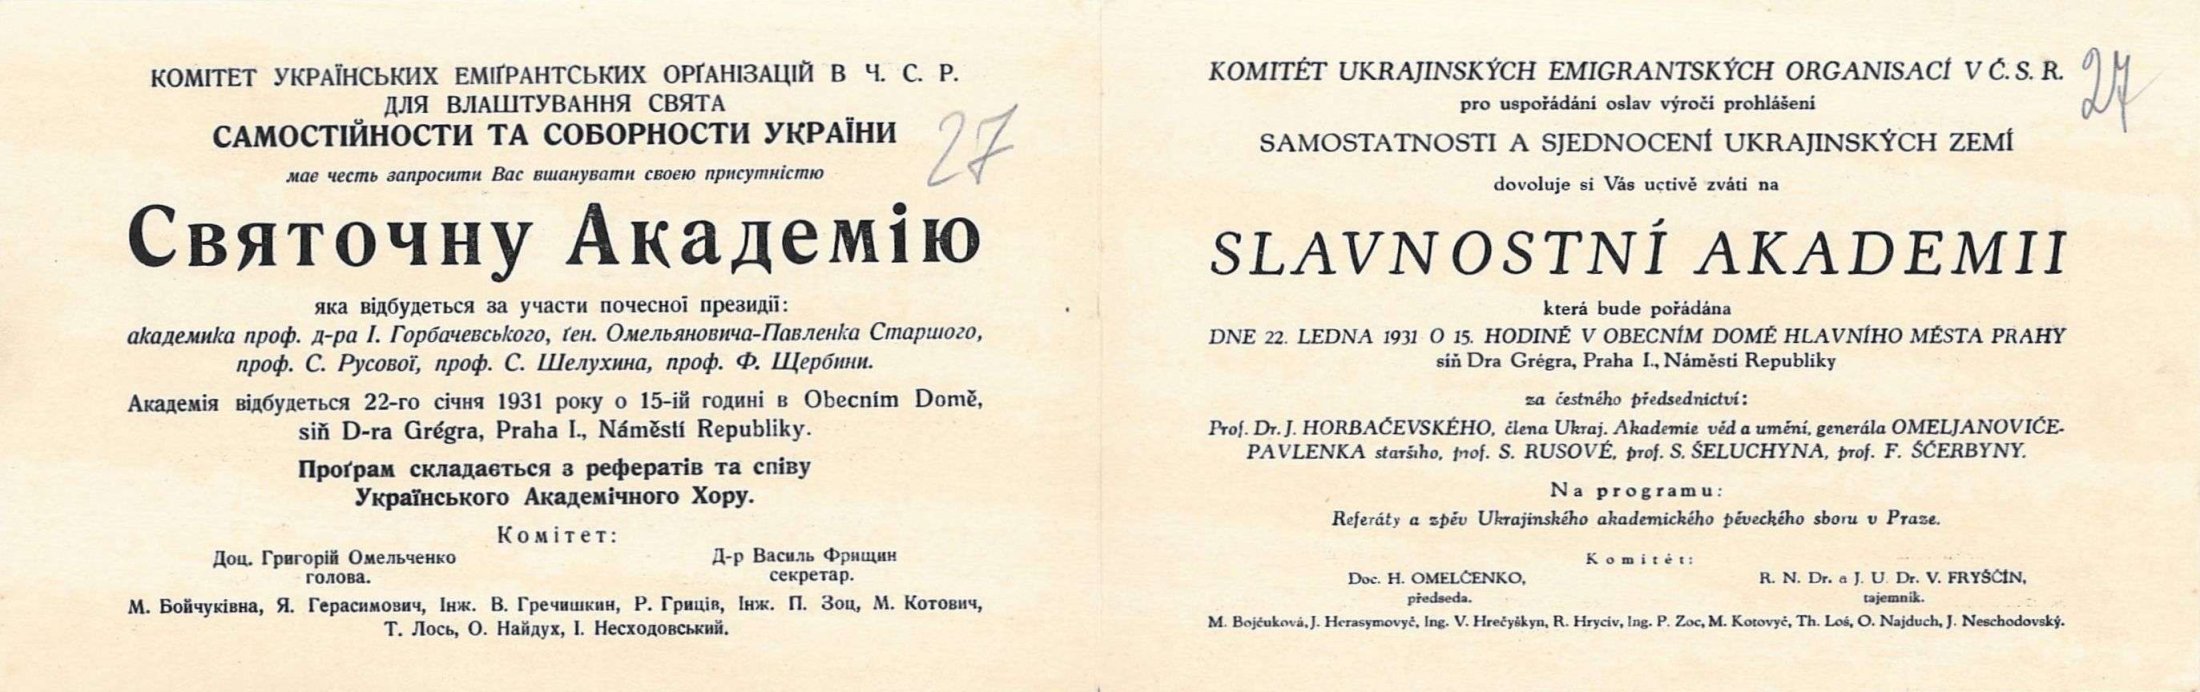 Запрошення Комітету Українських емігрантських організацій в ЧСР для влаштування свята самостійності та соборності України на святкову академію. Не пізніше 22 січня 1931 р.